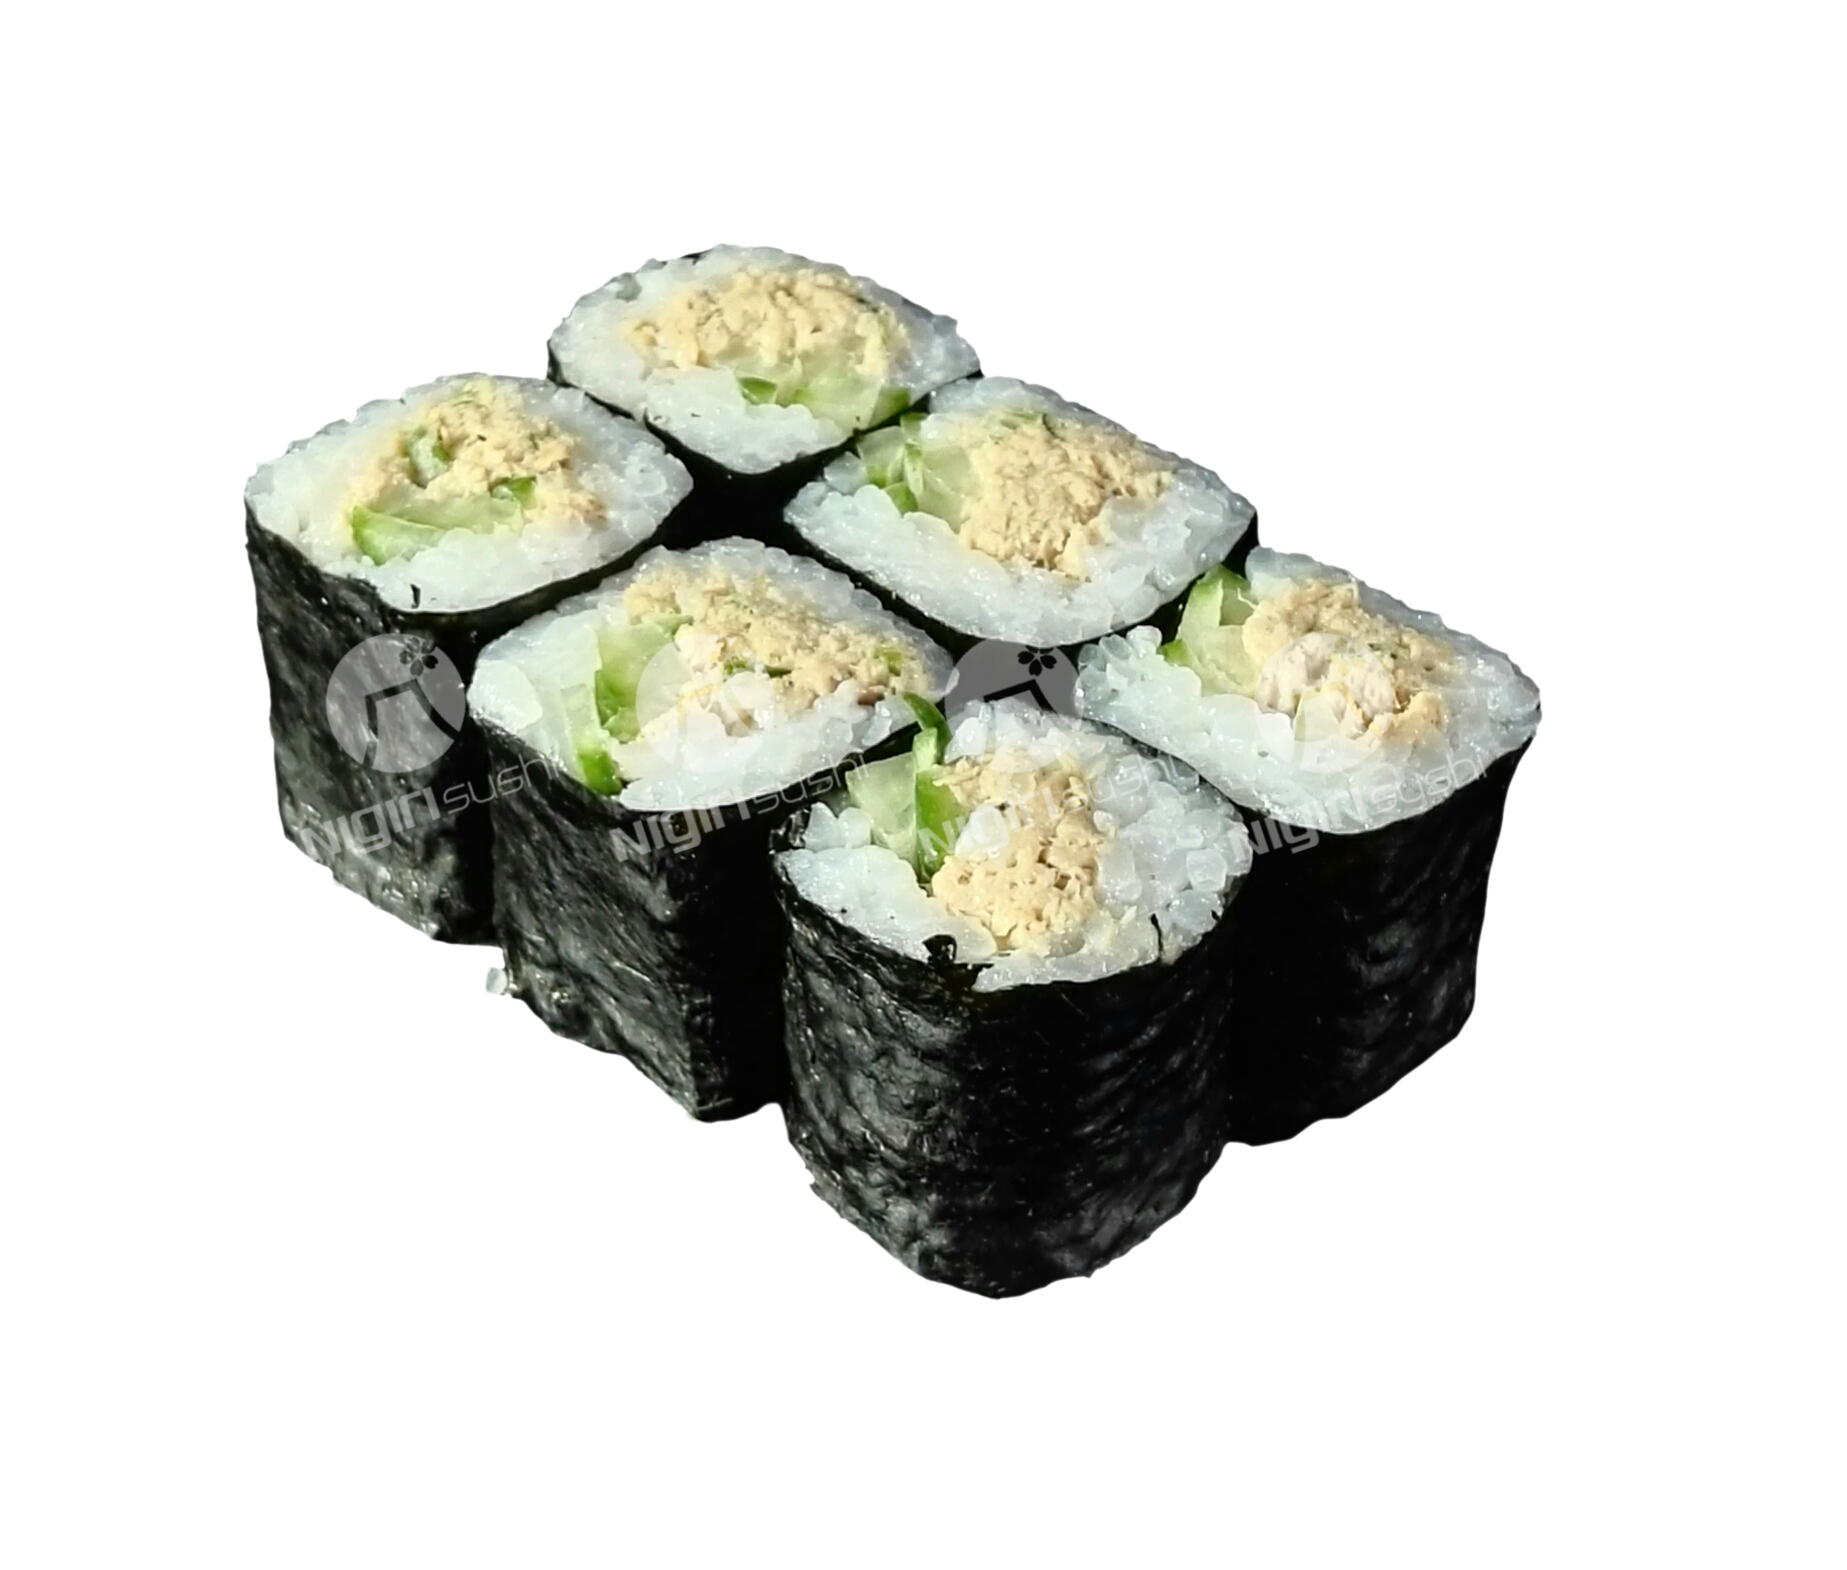 071. Gurken Thunfisch Maki – Nigiri Sushi